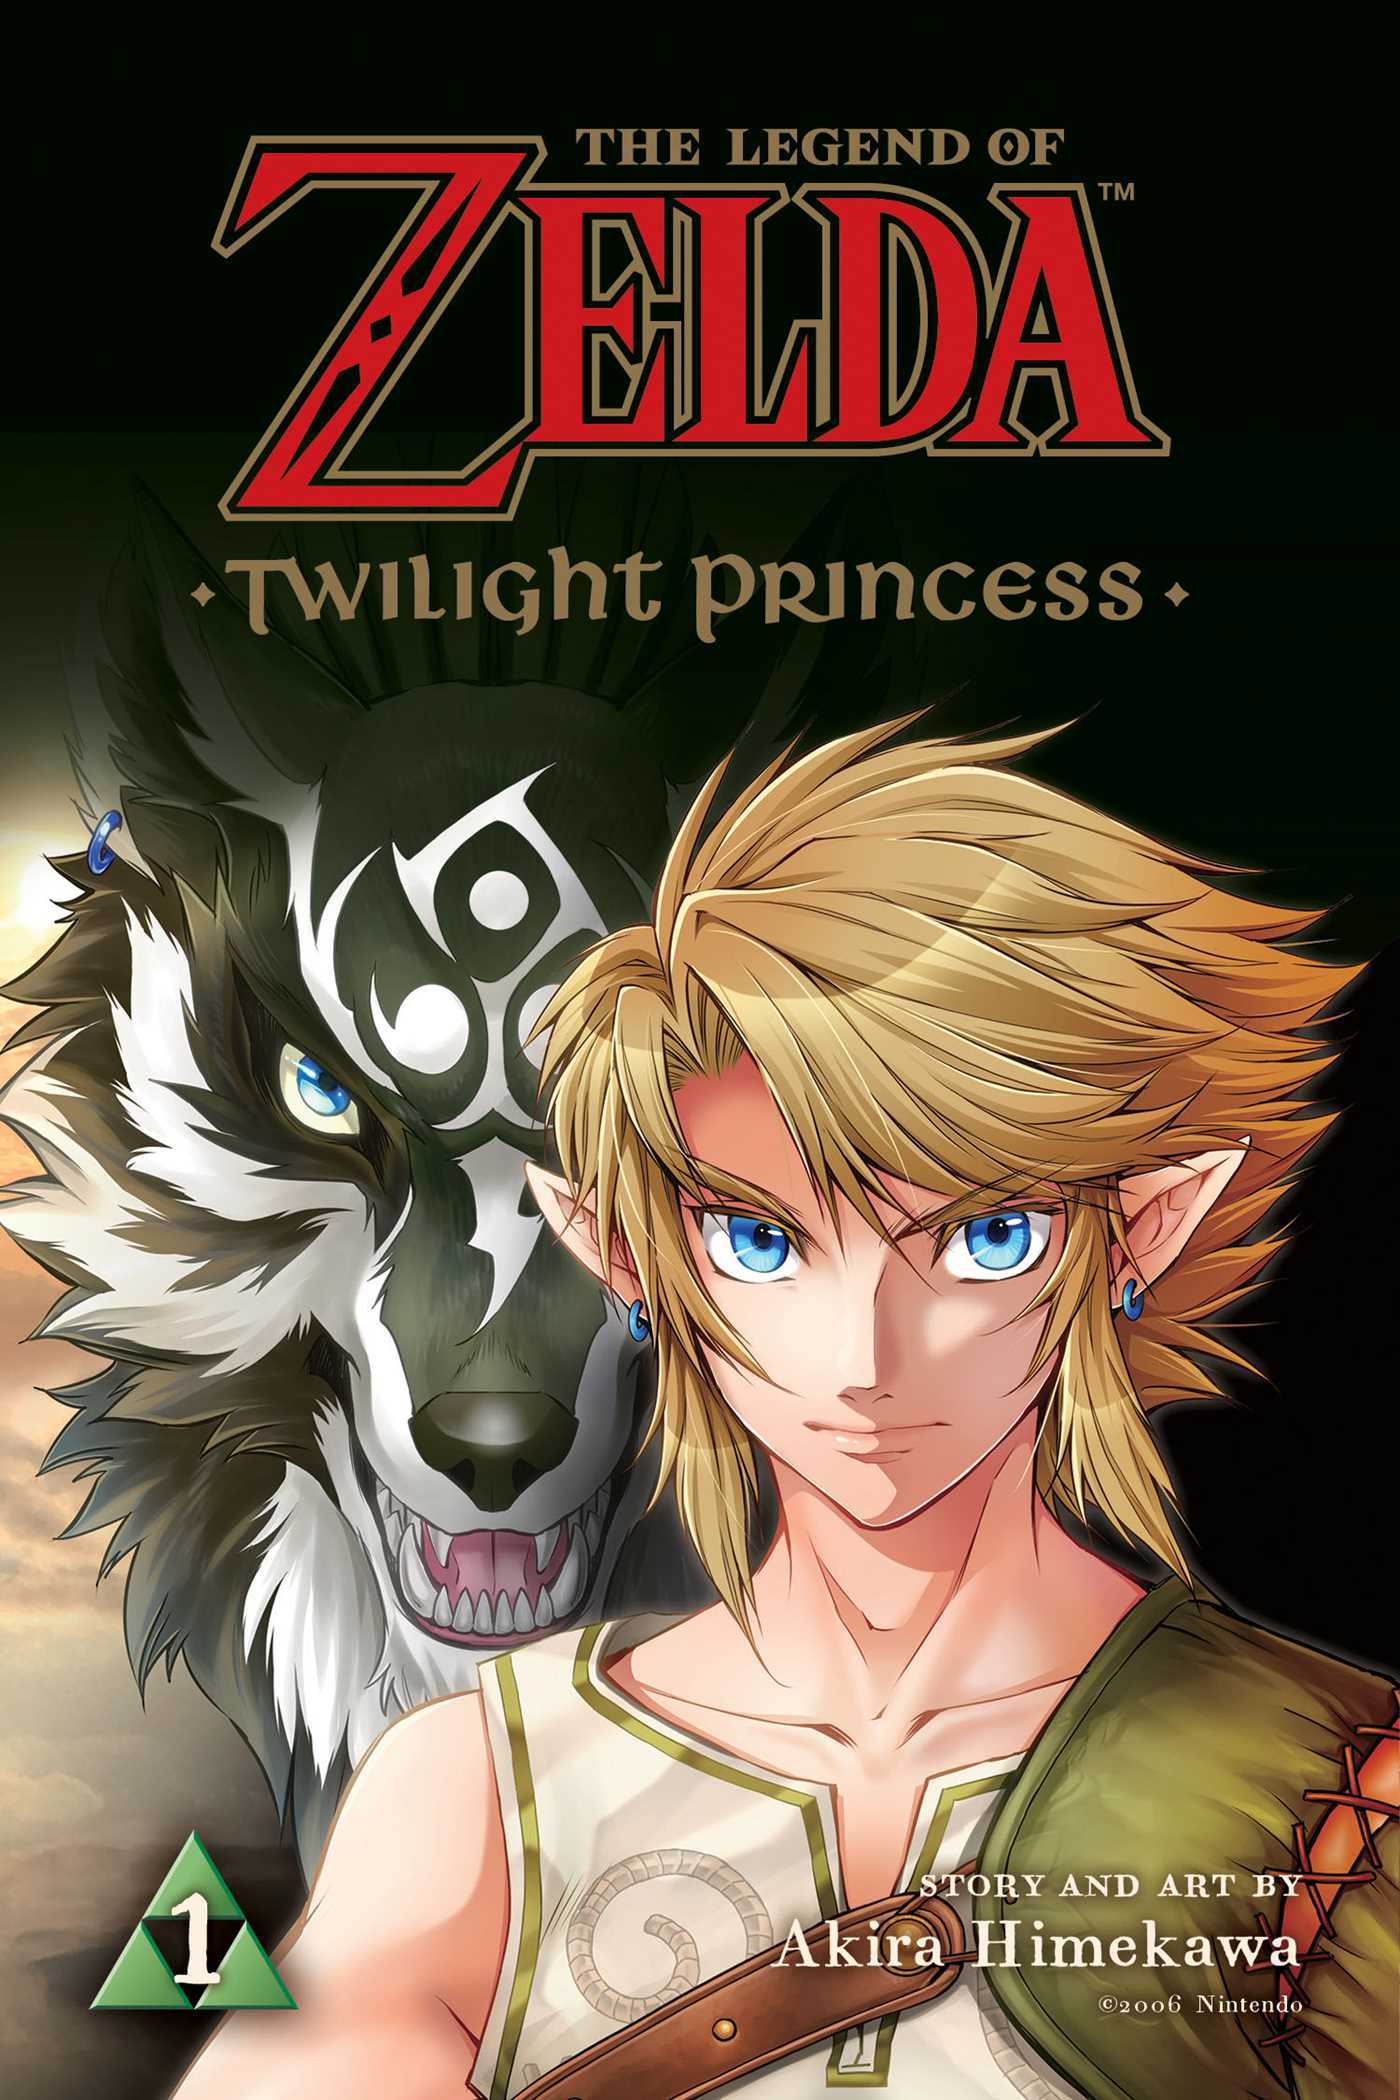 Zelda: Twilight Princess mangaen begynder sidste ark i juni